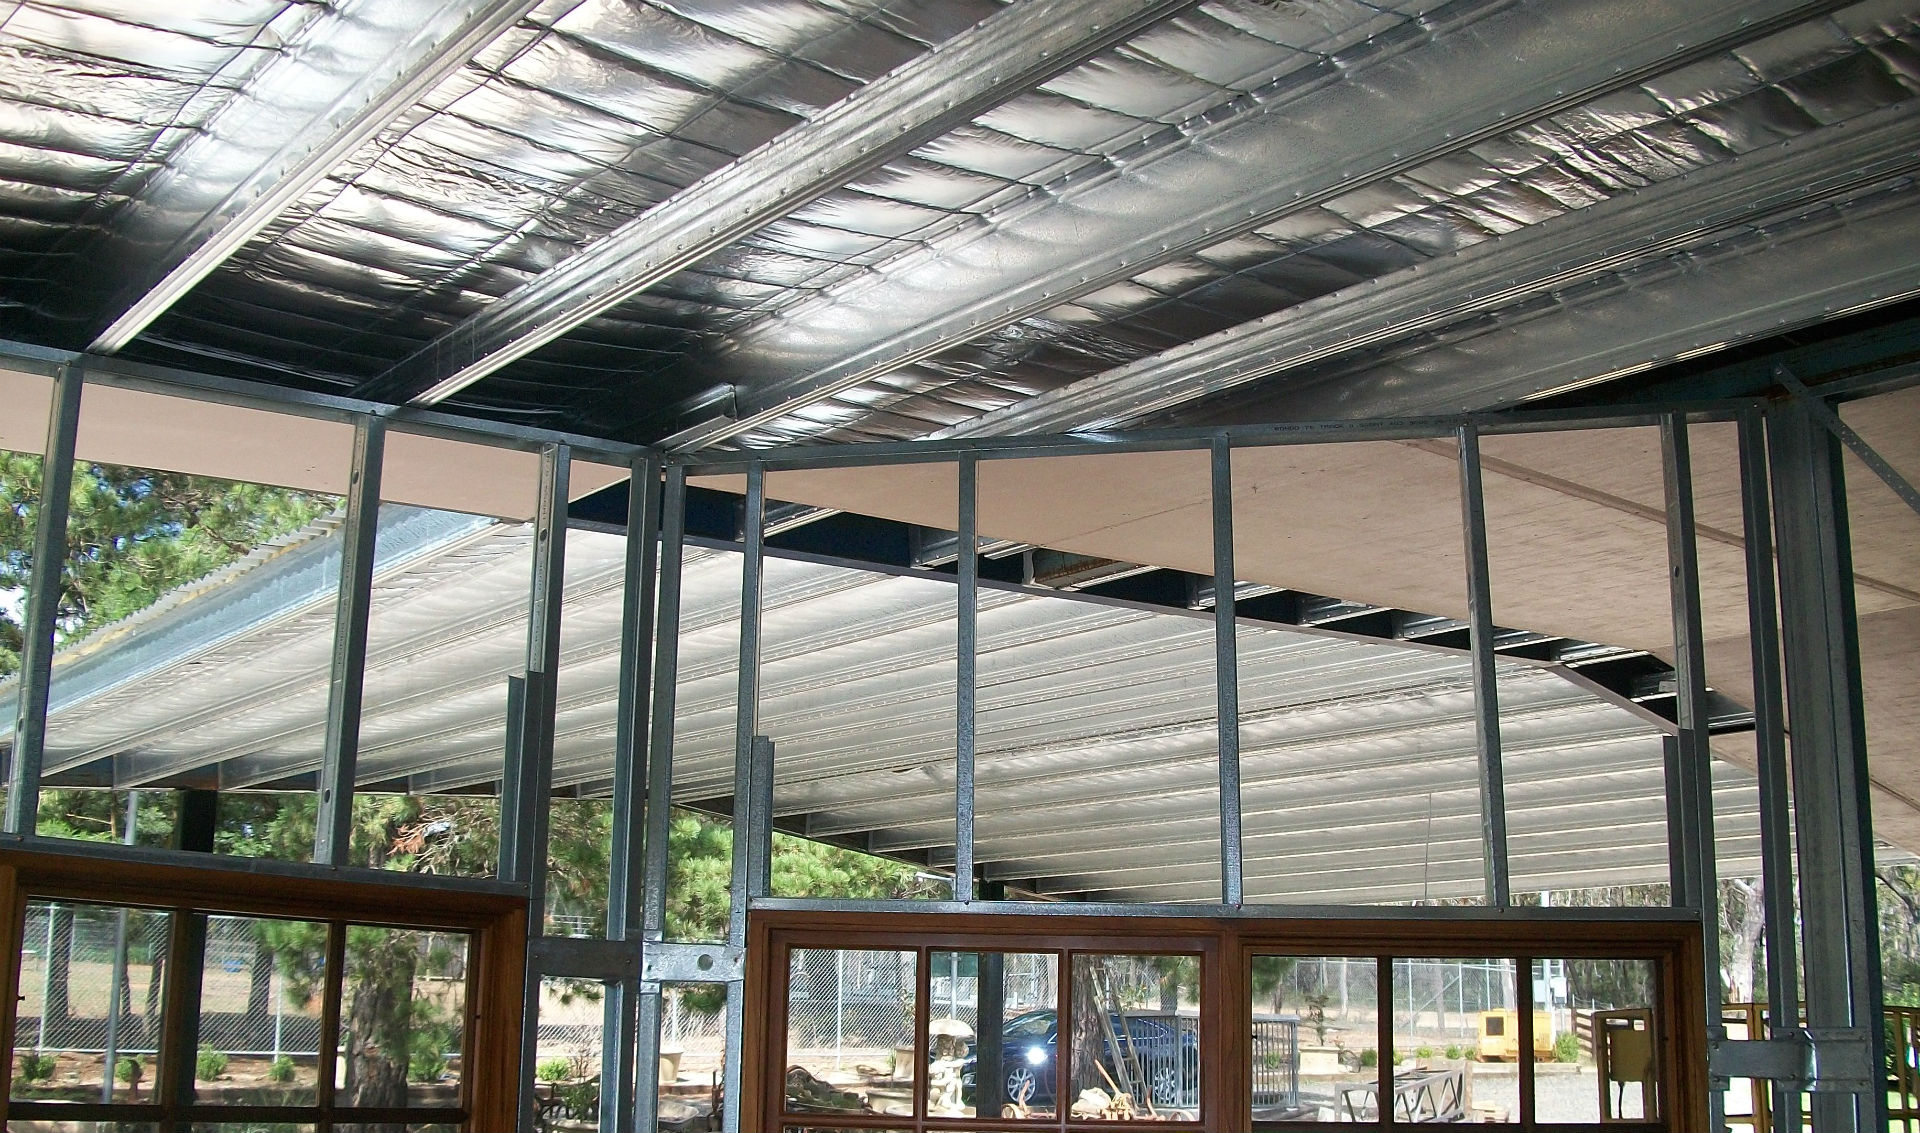 Boxspan skillion roof and carport canopy frames